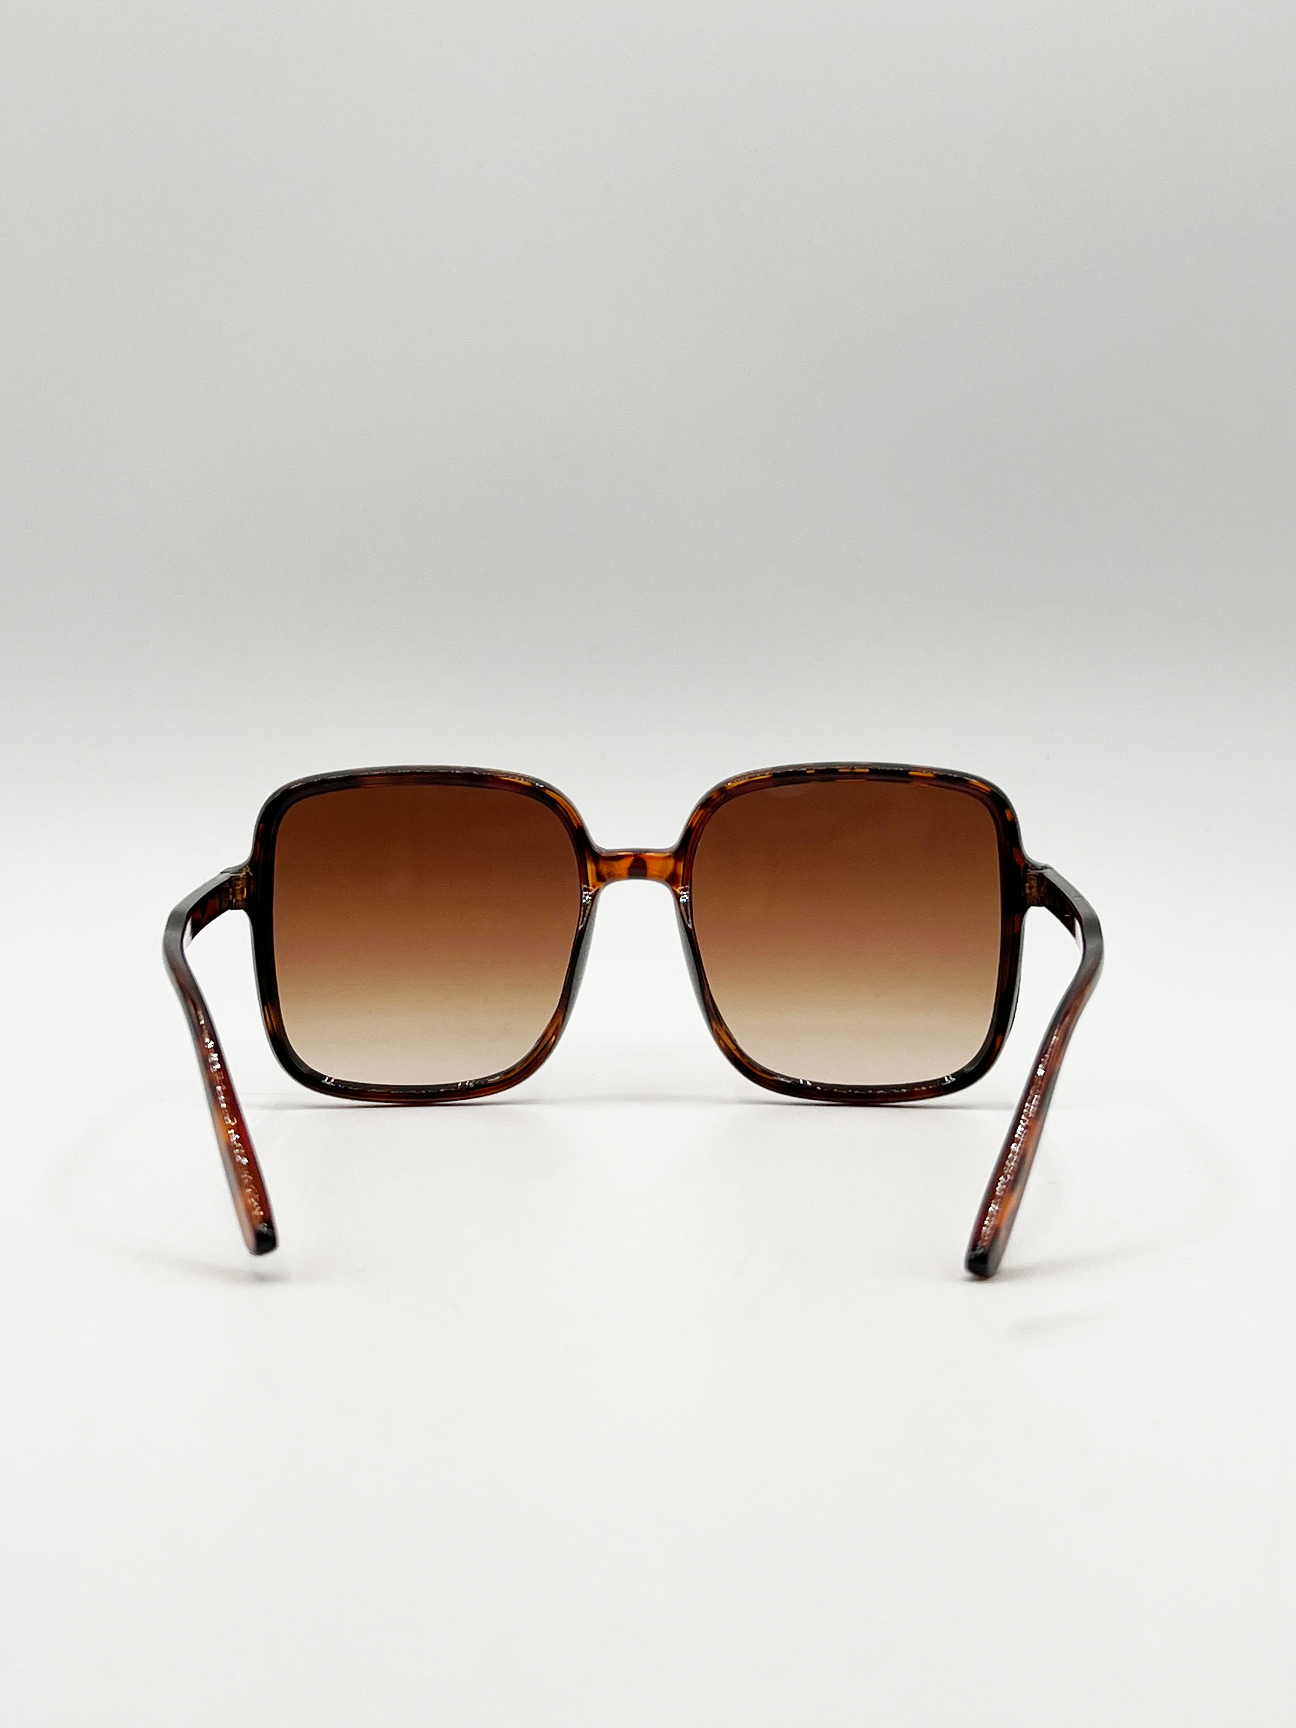 Oversized Lightweight Square Frame Sunglasses in Tortoiseshell